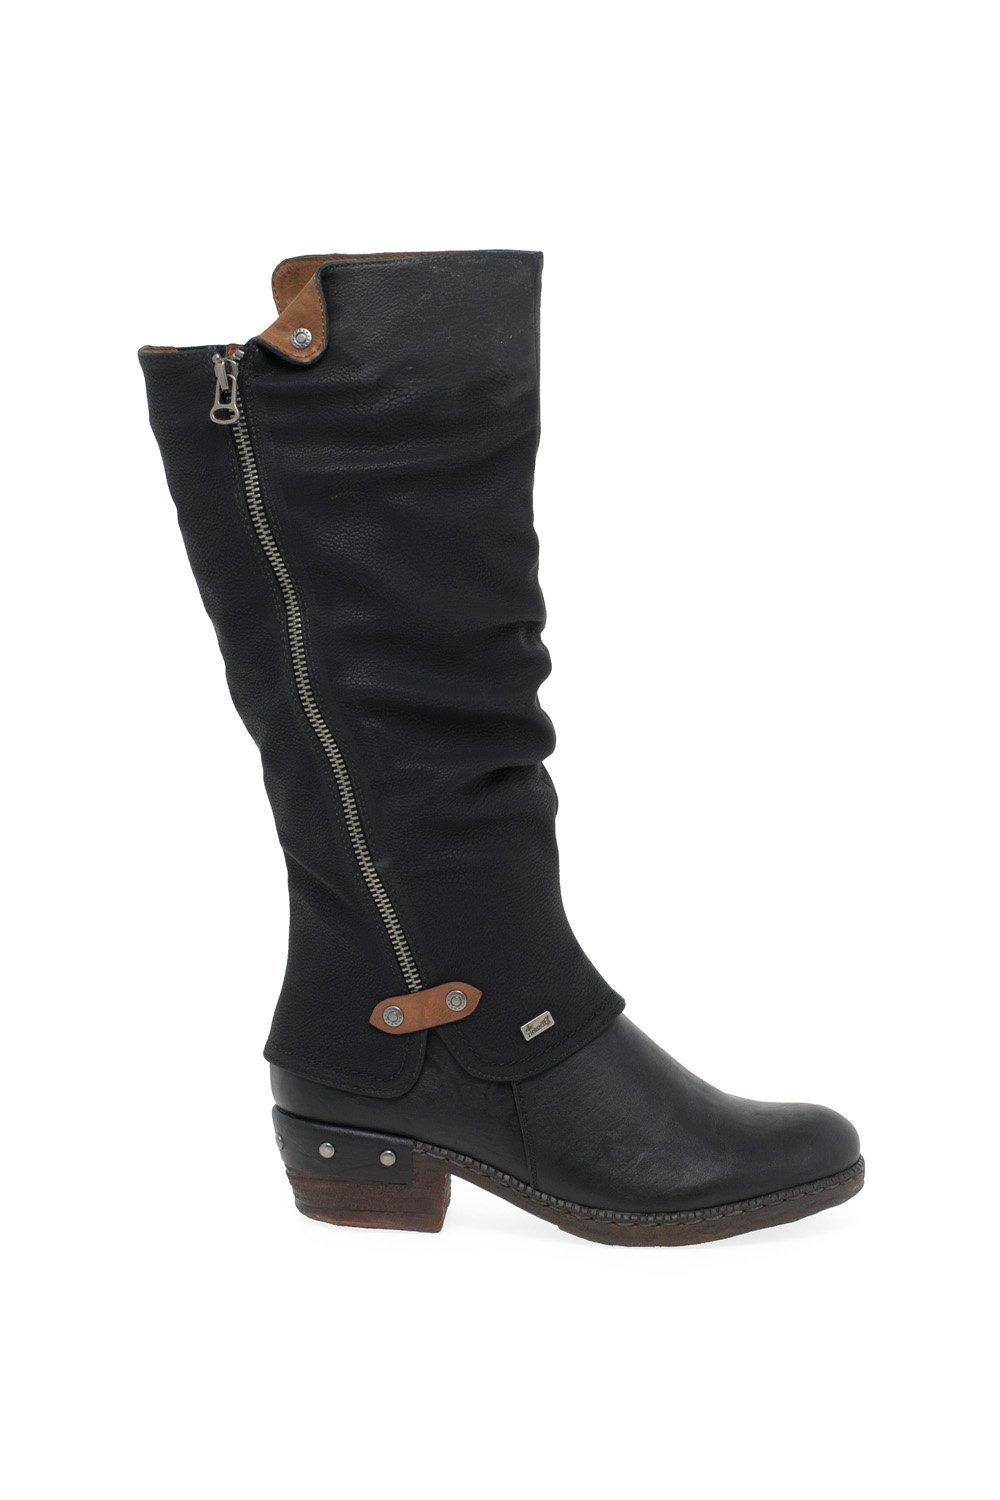 Rieker Women's 'Sierra' Long Boots|Size: 4|black